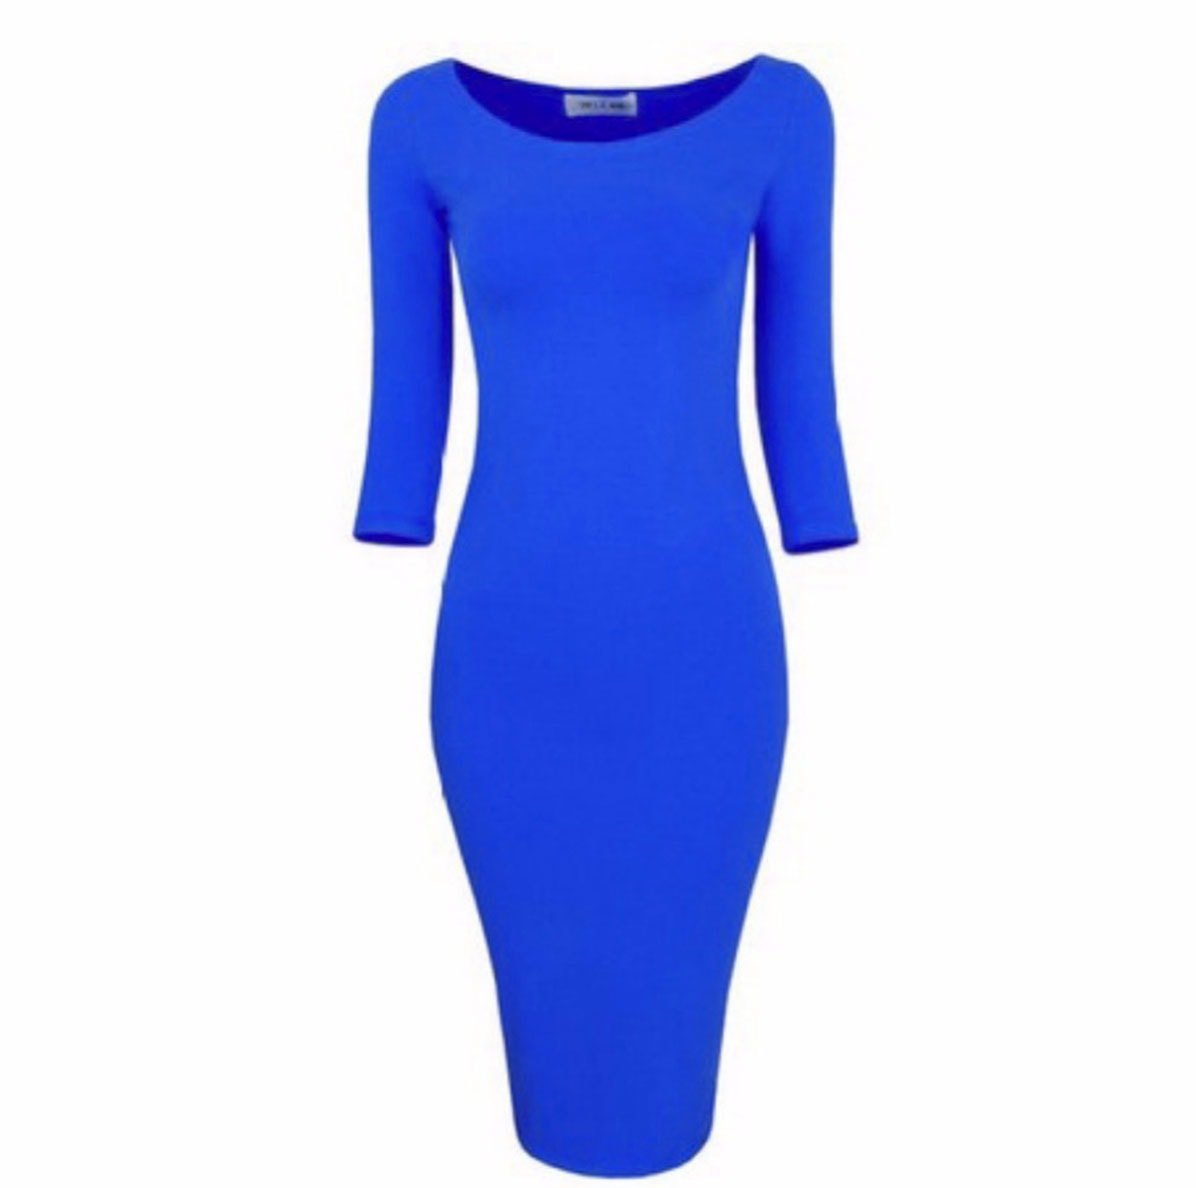 M0172 blue1 Bodycon Dresses maureens.com boutique